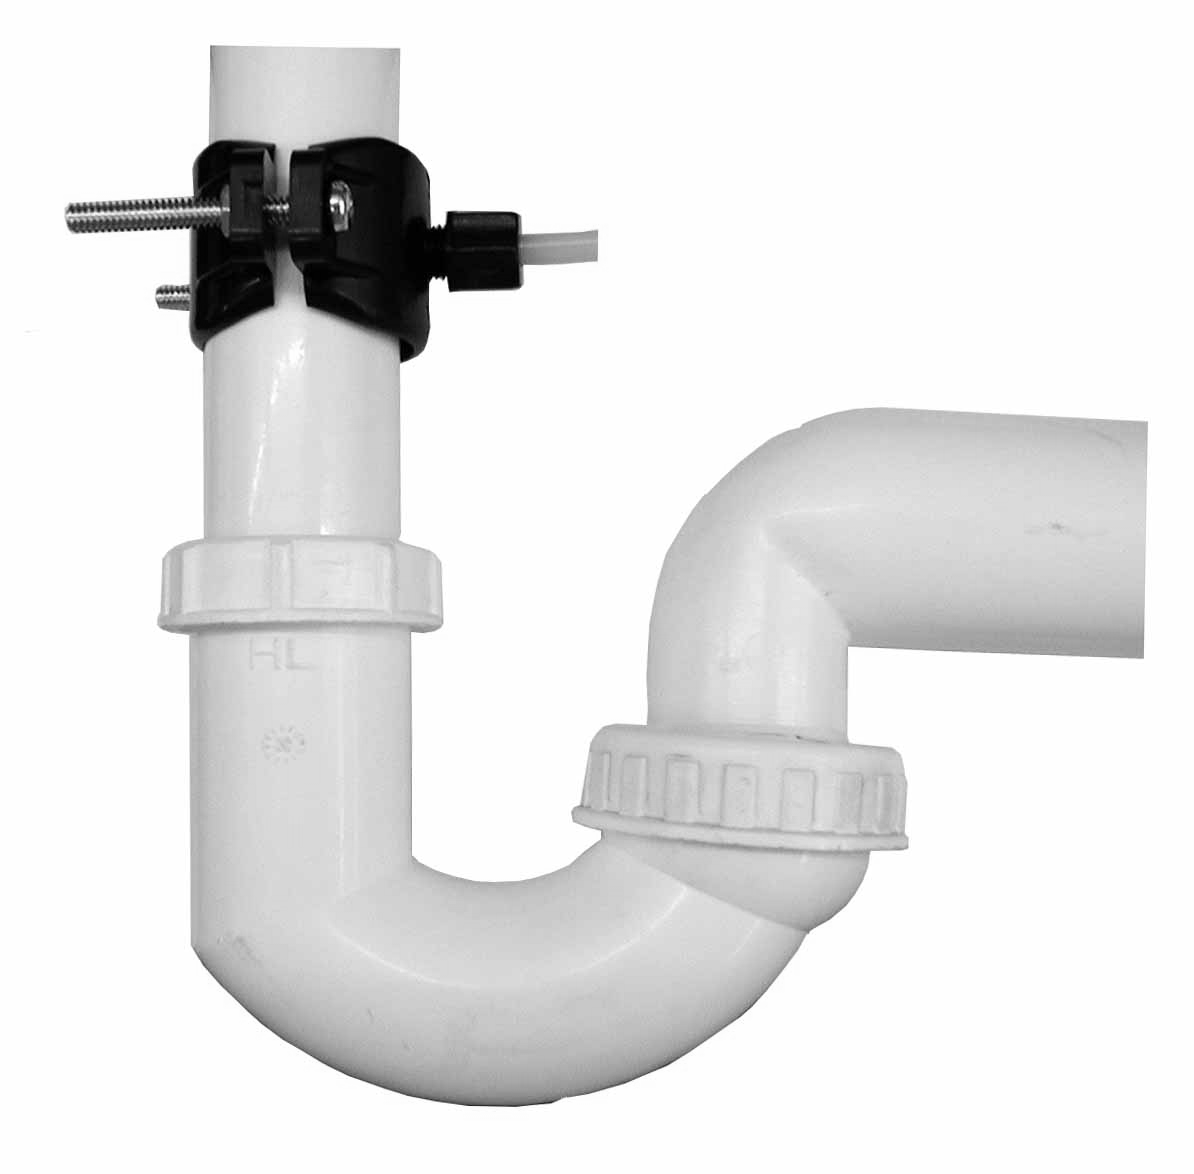 2) Abwasseranschluss Schwarzer Schlauch: Anschluss des Schlauchs am Siphonabflussrohr Die Anschlussposition muss immer oberhalb des Siphonabflussrohres liegen.